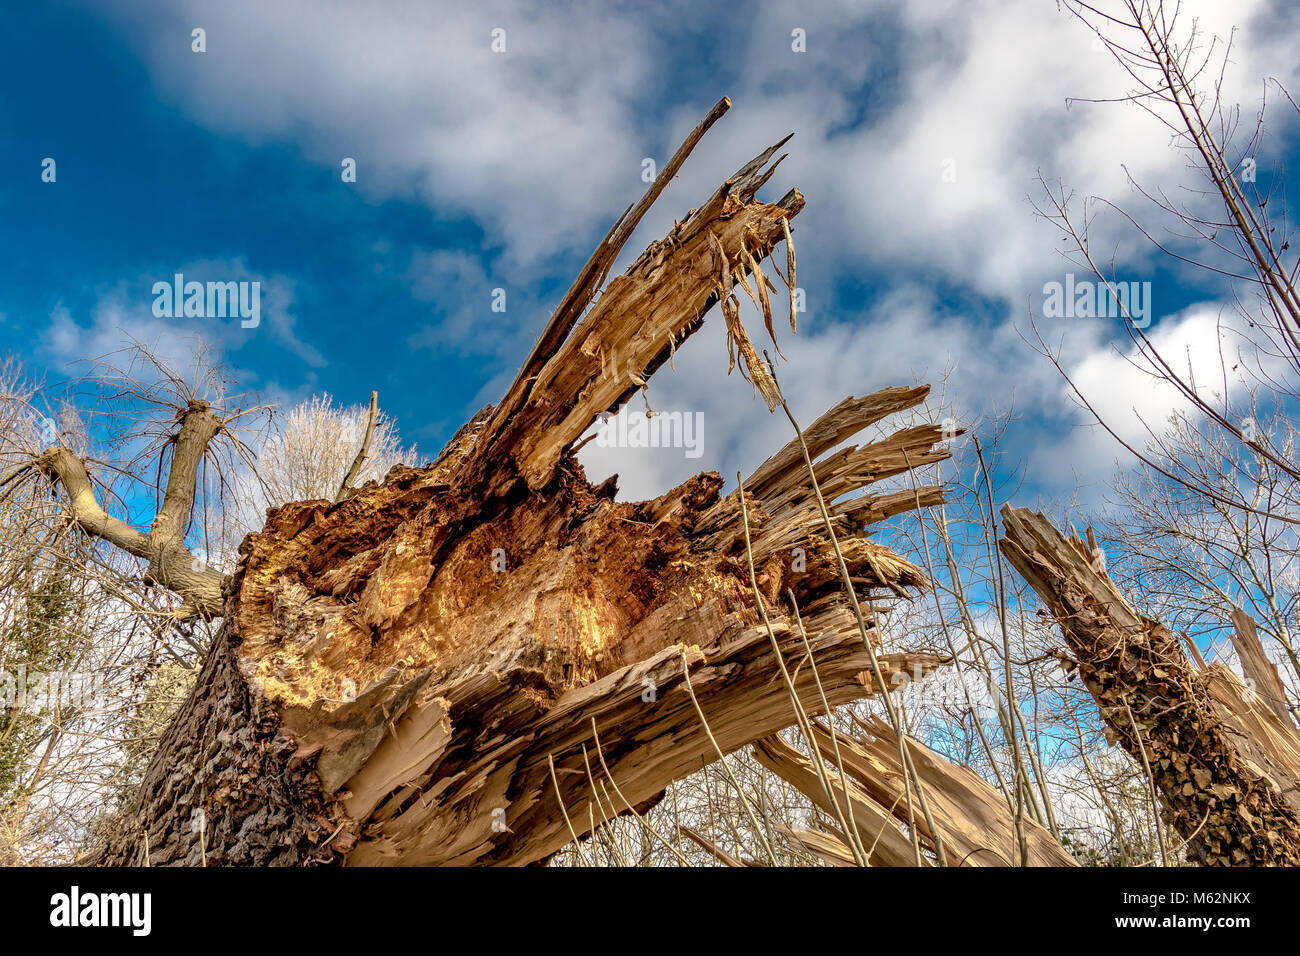 Nahaufnahme von einer verfallenden, gefallenen Esche, zeigt die gezackten, zerbrochene Scherben von Holz Stockfoto